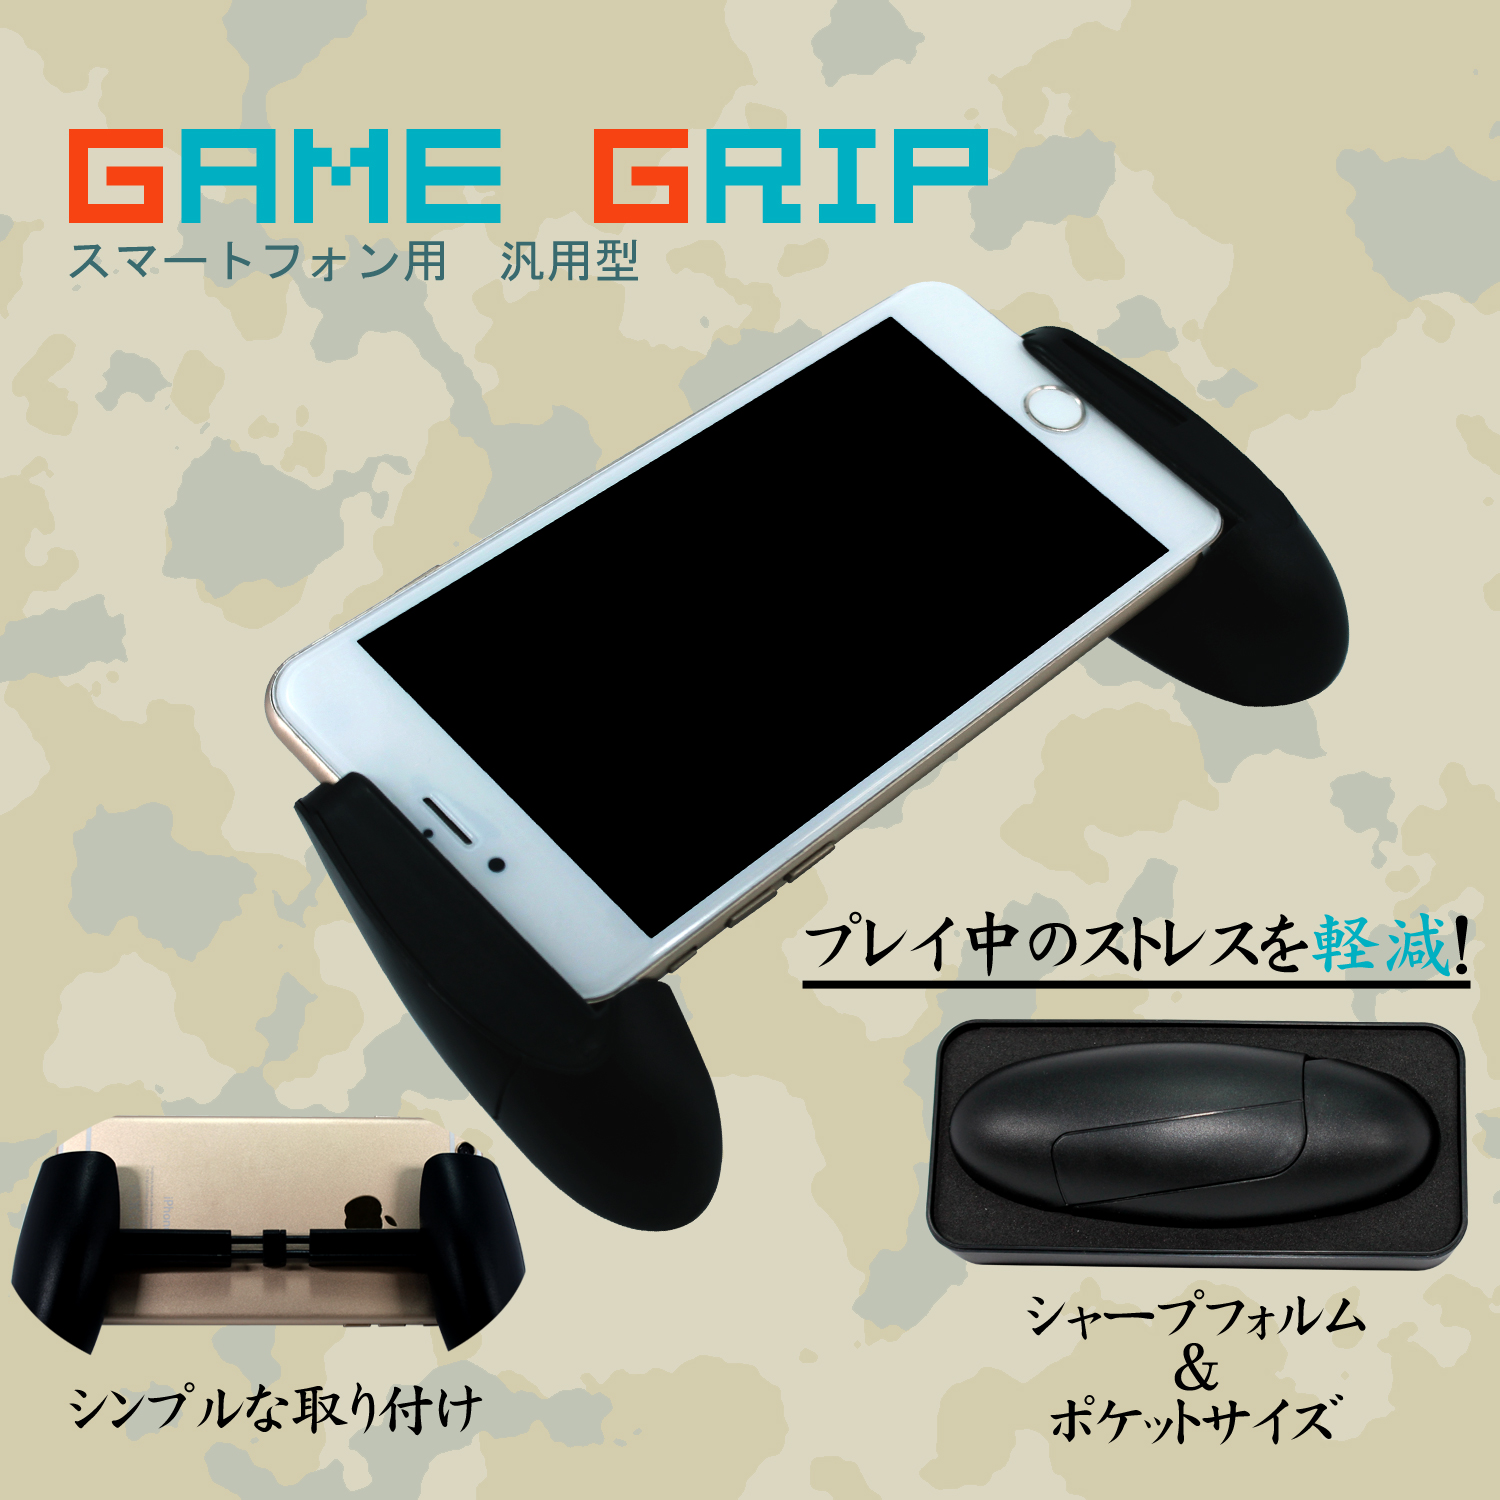 送料無料 ゲーム グリップ スマホ スマートフォン 汎用型 シンプル ポケットサイズ Game Grip 簡単取り付け Iphone Android スマホゲーム ストレスフリー ホワイトナッツ